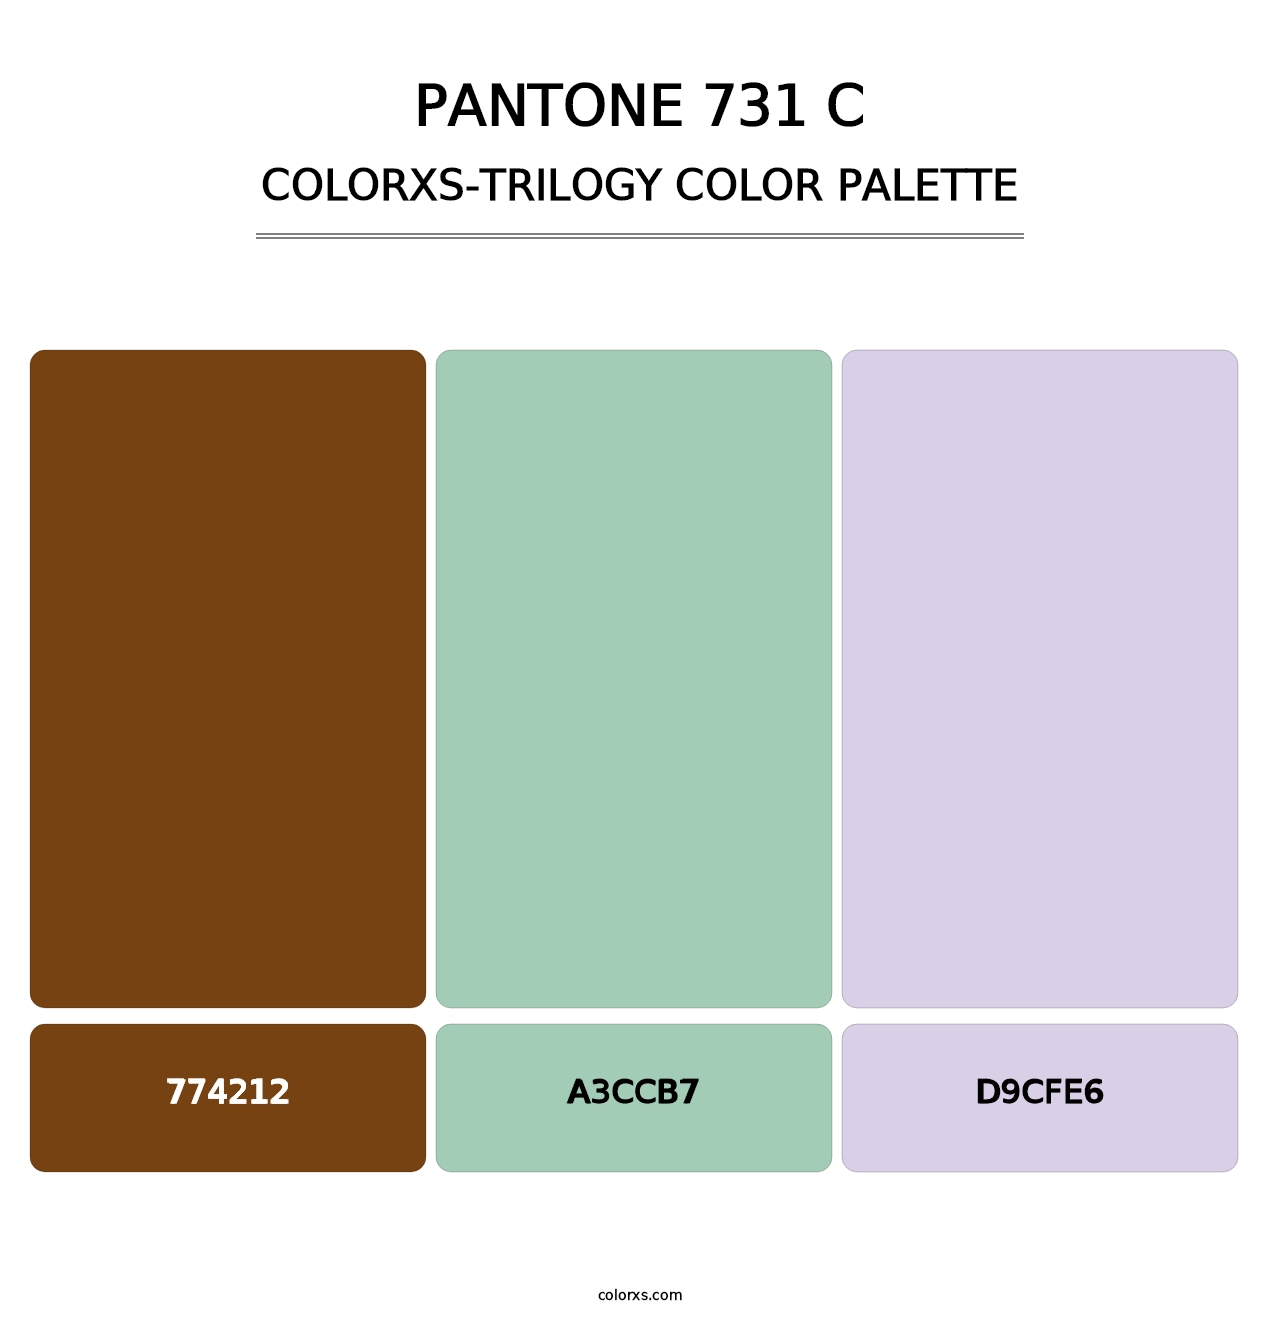 PANTONE 731 C - Colorxs Trilogy Palette